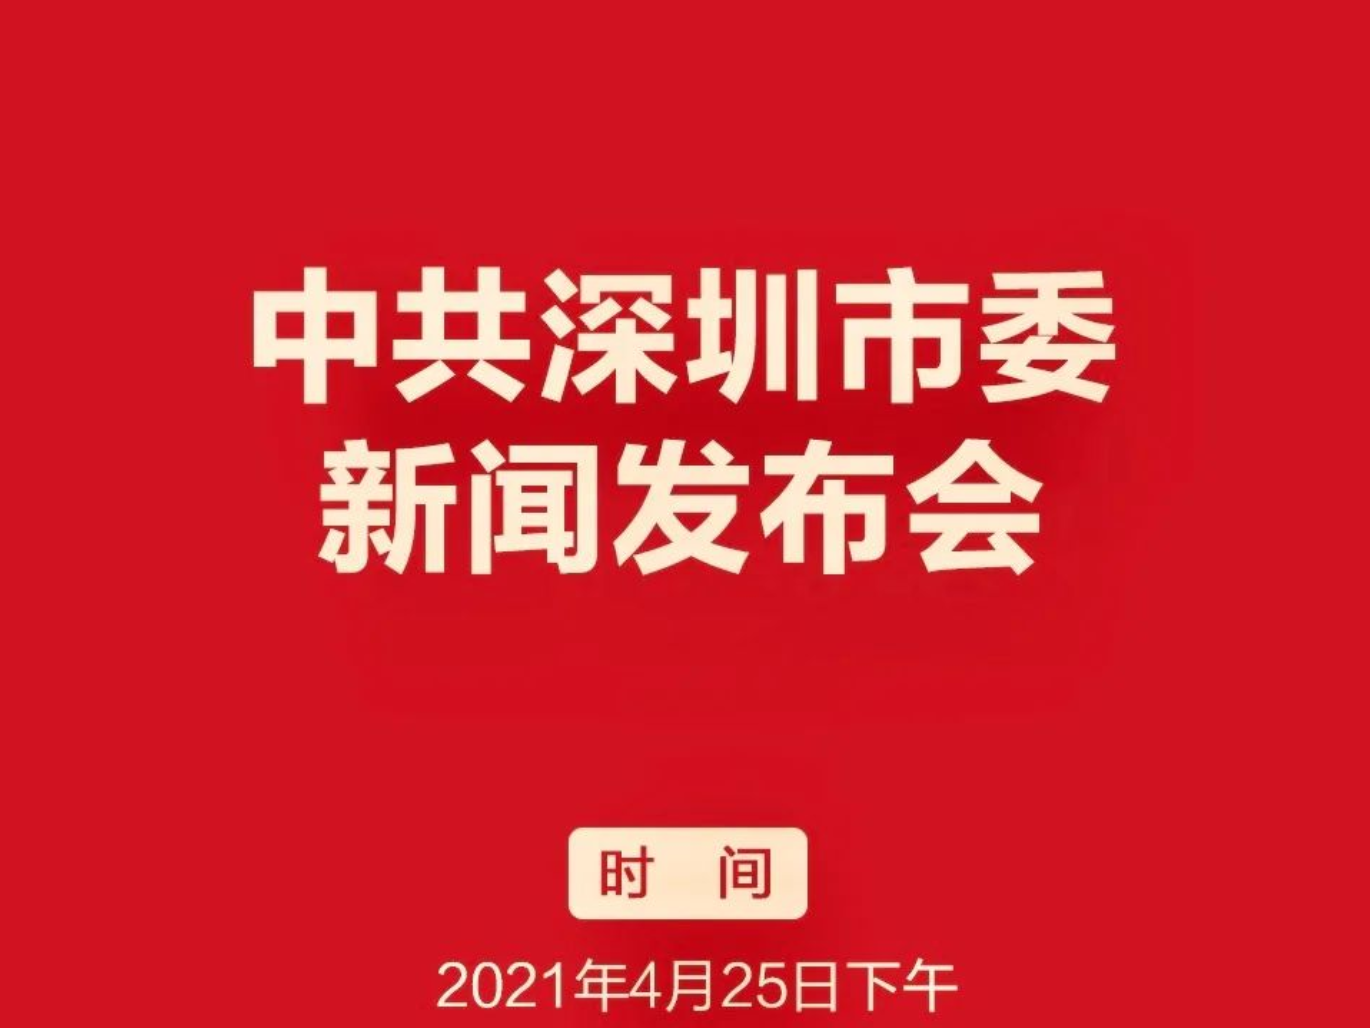 中共深圳市委新闻发布会将于4月25日举行，敬请关注！ 